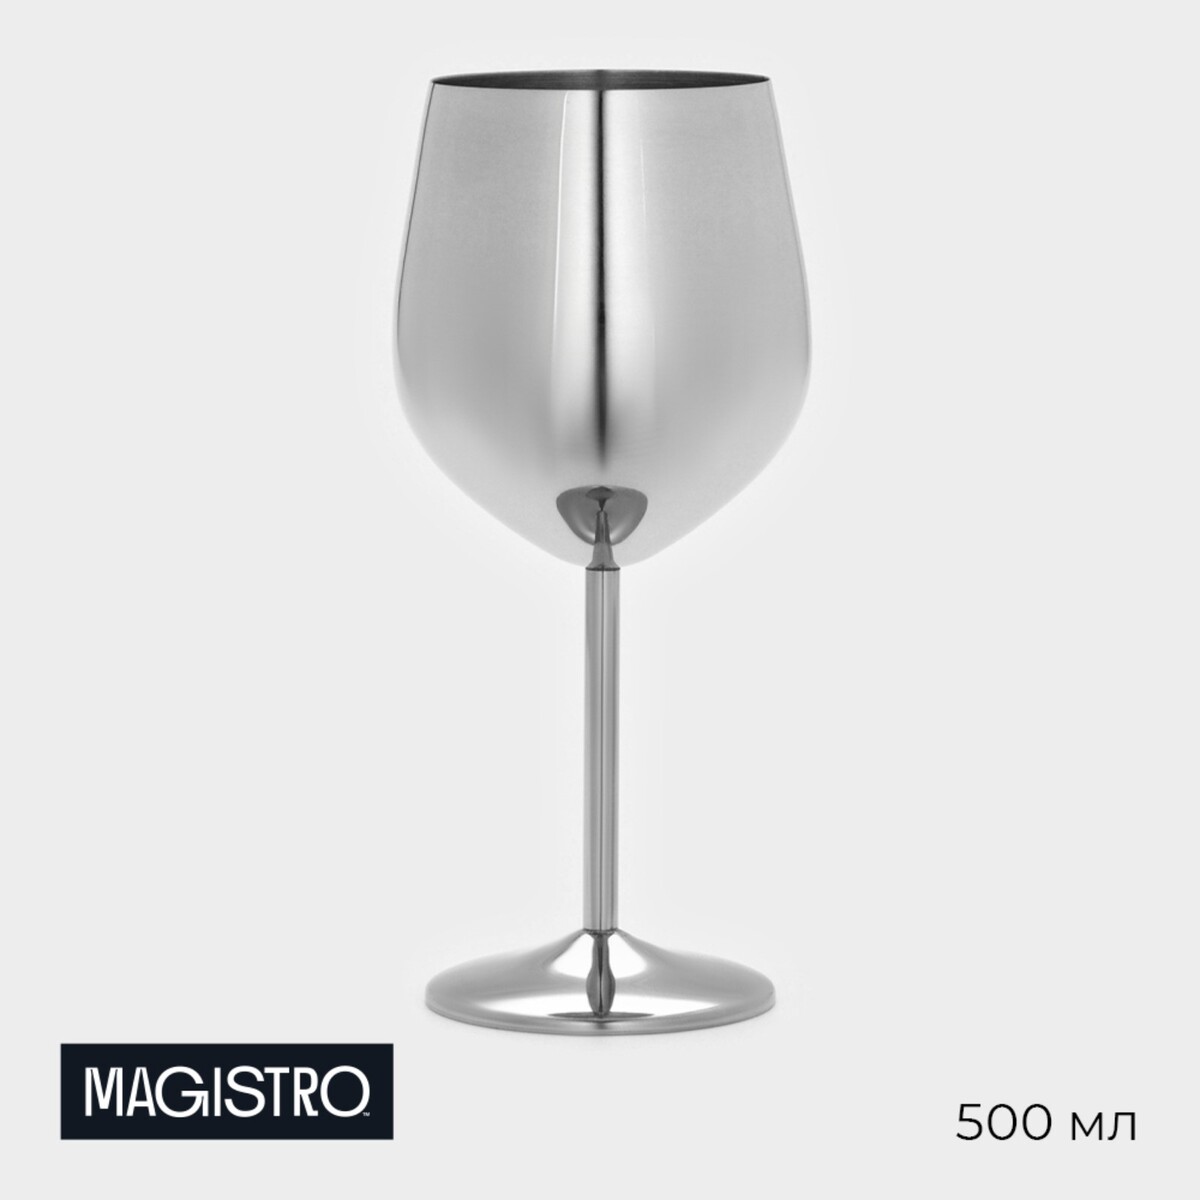 Бокал винный из нержавеющей стали magistro, 500 мл, 21×9,5 см, для коктейлей, глянцевый, цвет серебряный бокал шампанского